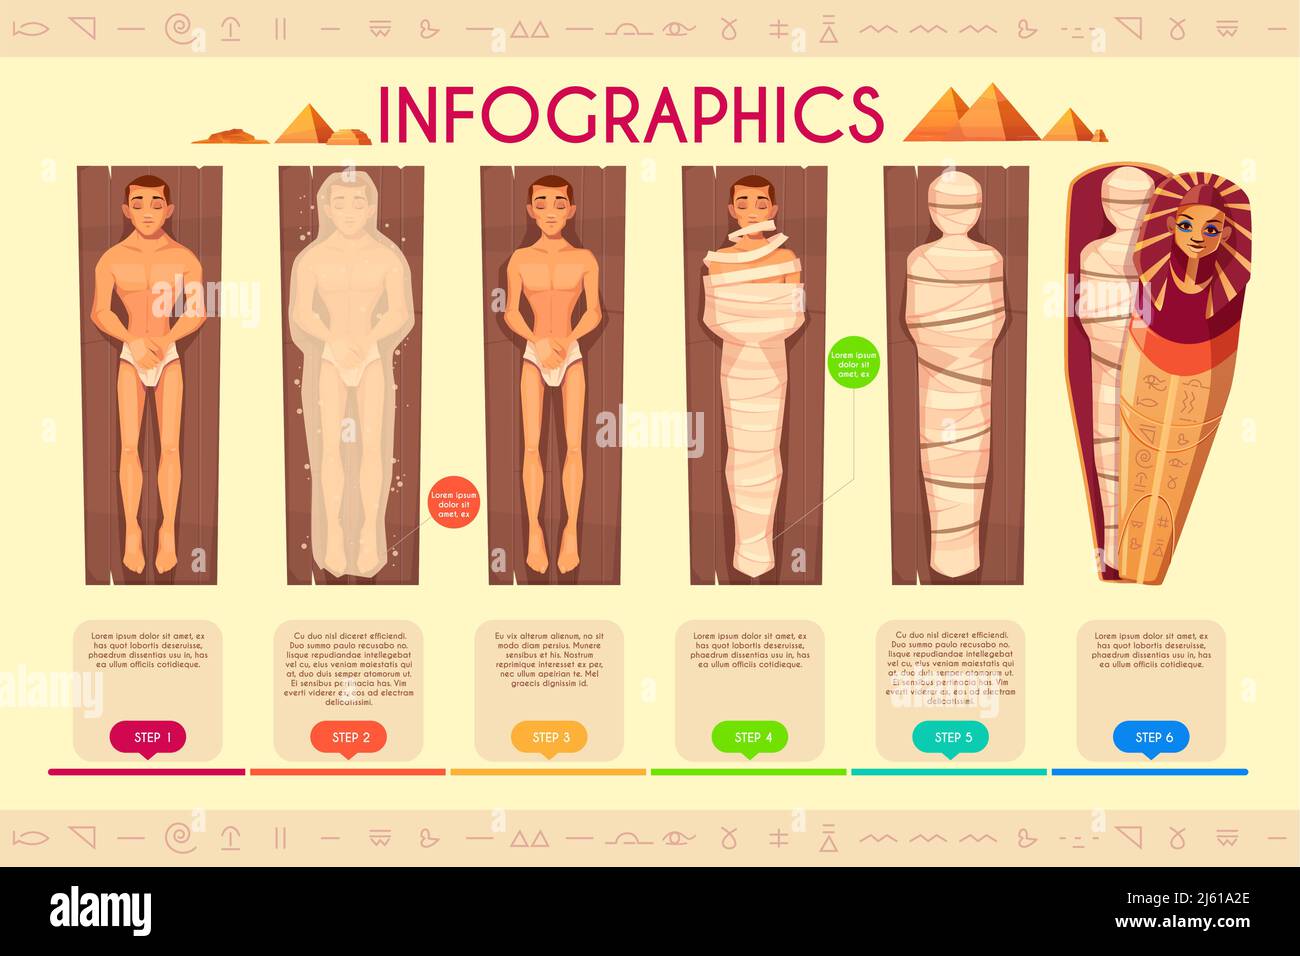 Création de momies infographiques, étapes du processus de momification, ligne de temps. Ancien rituel religieux des égyptiens de envelopper le corps humain mort duri Illustration de Vecteur